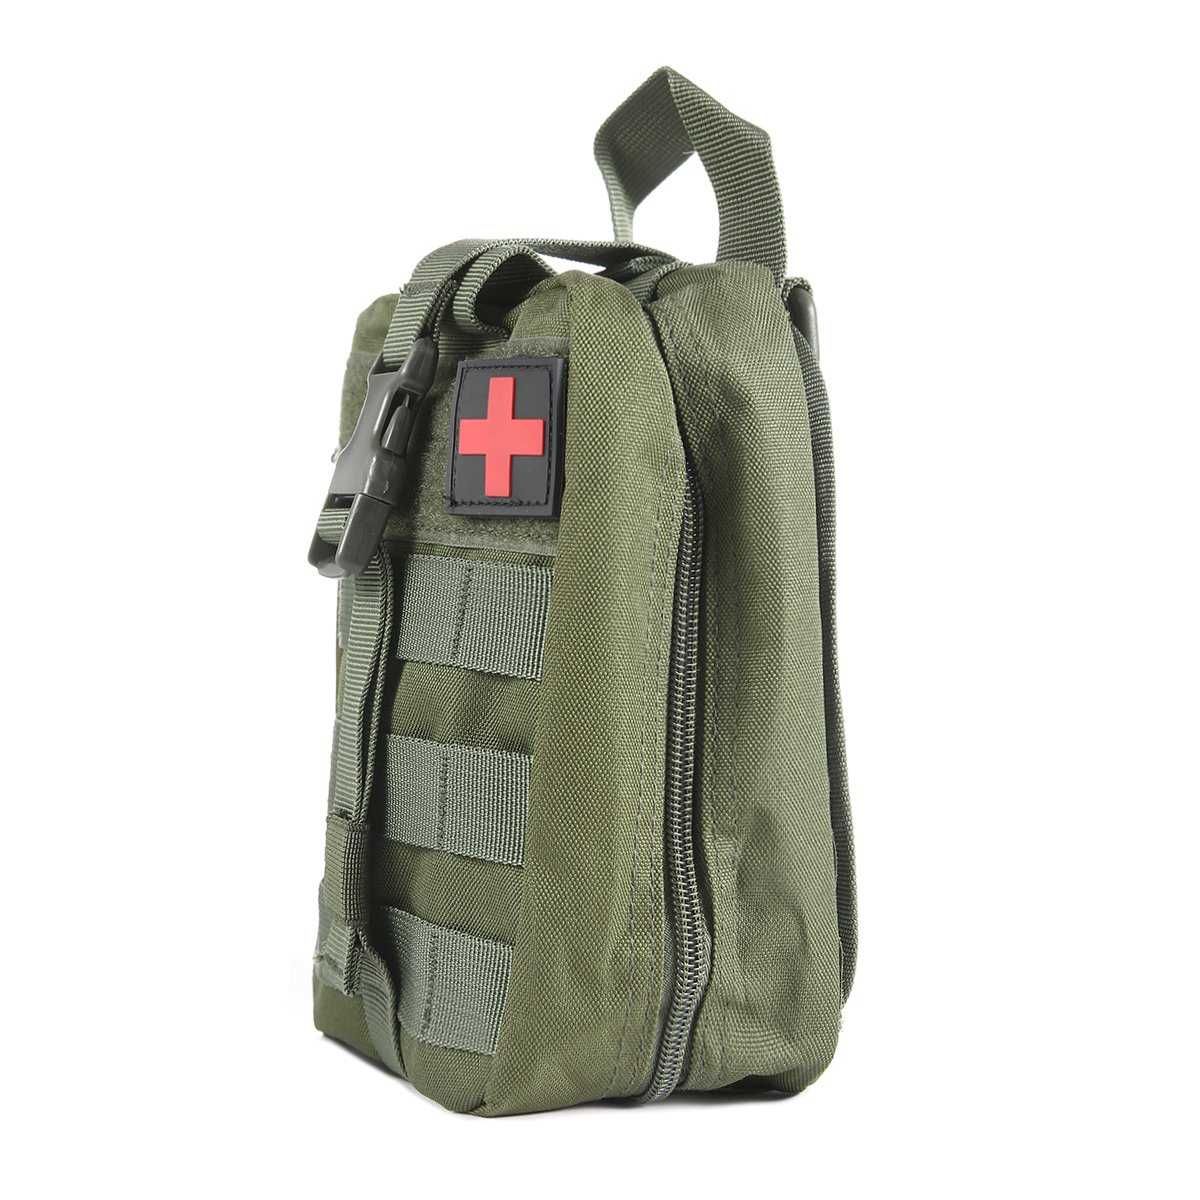 1000x Apteczka wojskowa torba taktyczna plecak IFAK MOLLE pasa ZIELEŃ